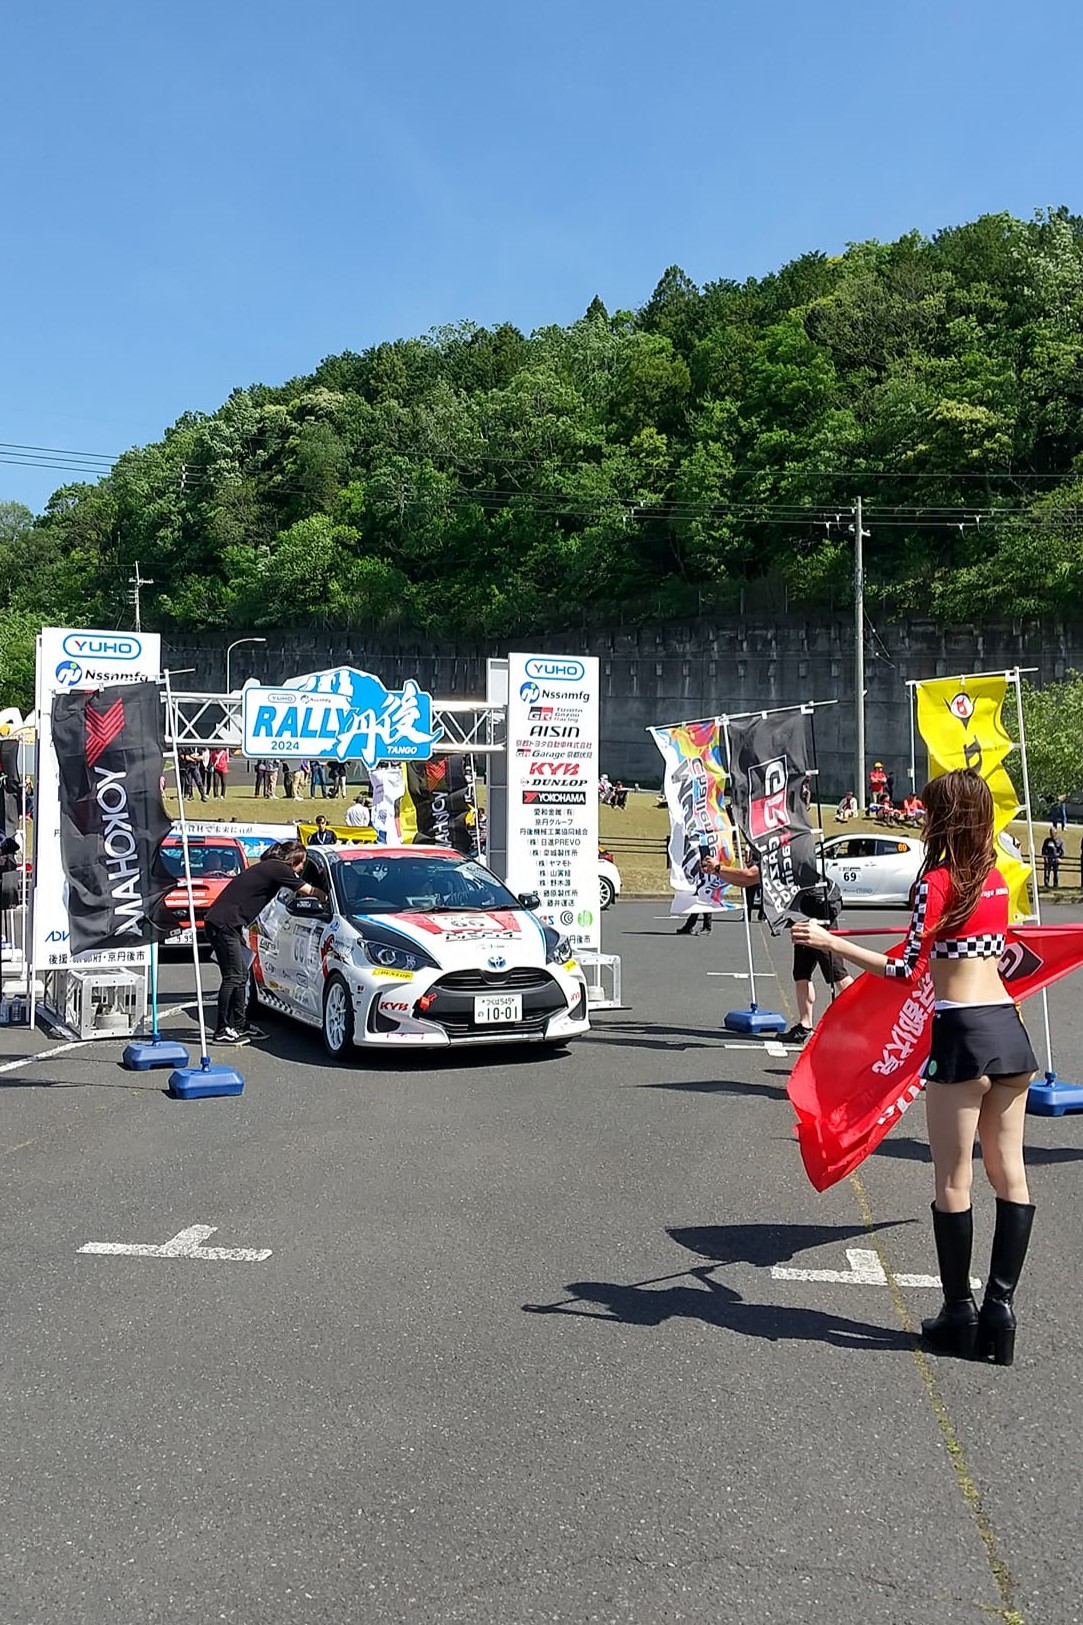 【モータースポーツ】全日本ラリー選手権第4戦 YUHO Rally Tango supported by Nissn Mfg参戦報告